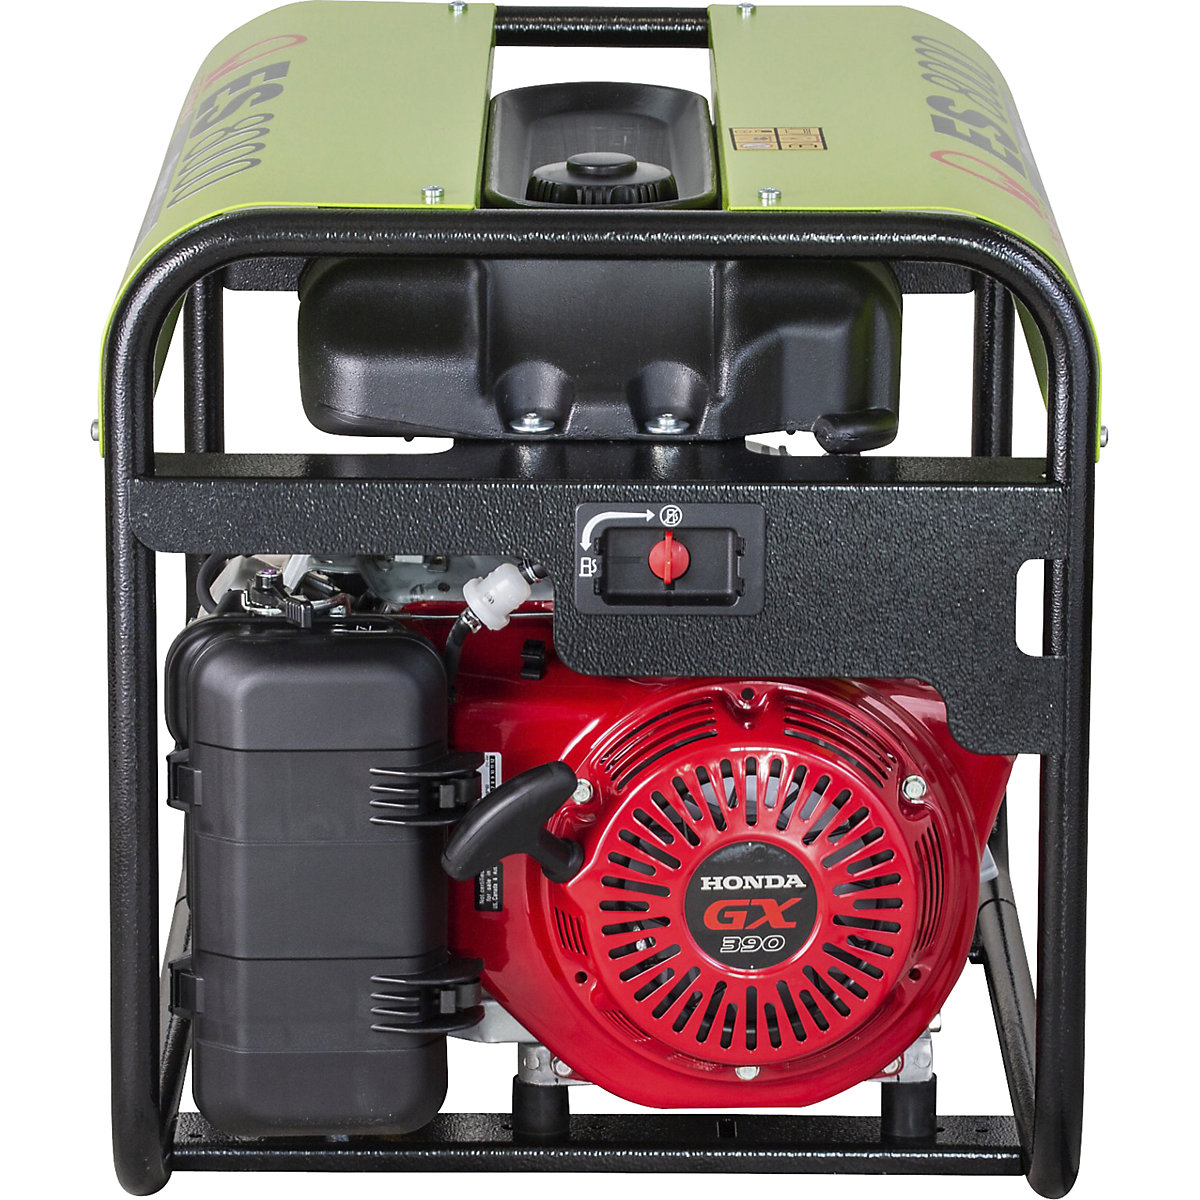 Générateur d'électricité série ES – essence, 230 V – Pramac (Illustration du produit 3)-2